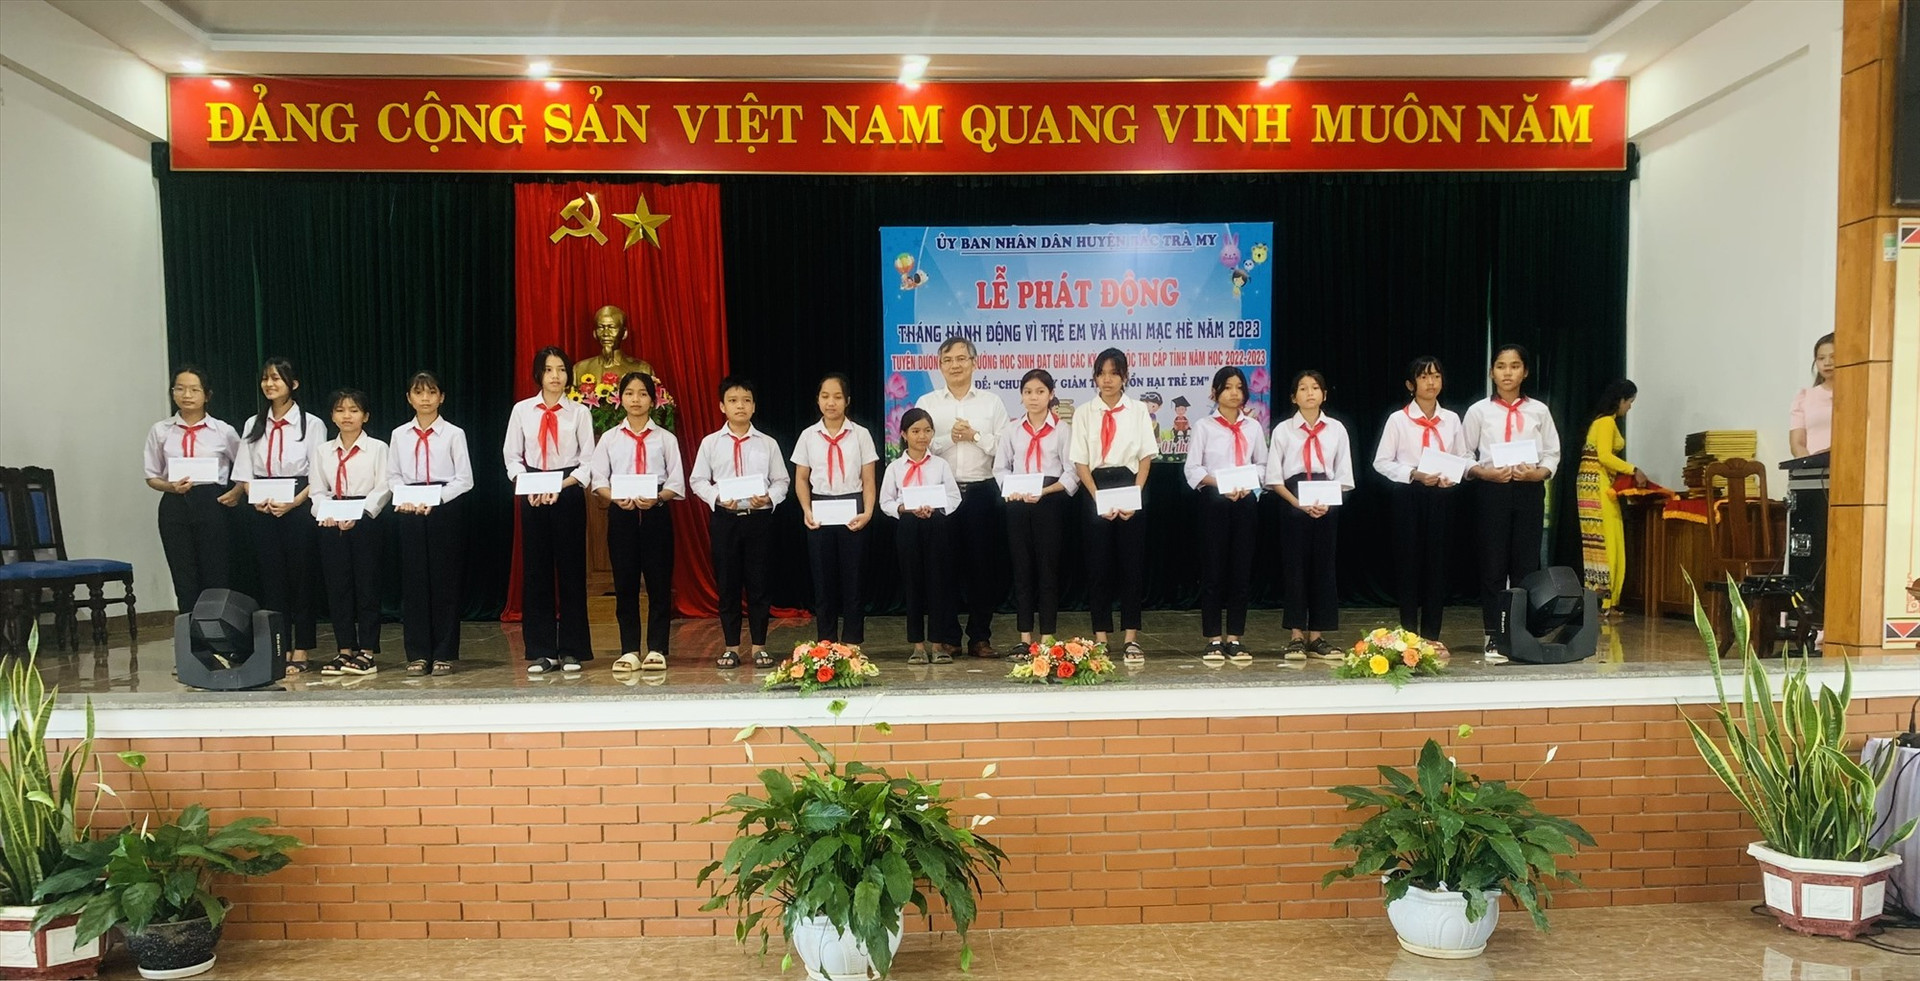 Ông Thái Hoàng Vũ - Chủ tịch UBND huyện Bắc Trà My trao học bổng cho các em học sinh vượt khó học giỏi trên địa bàn huyện. ẢNH TÚ VÂN